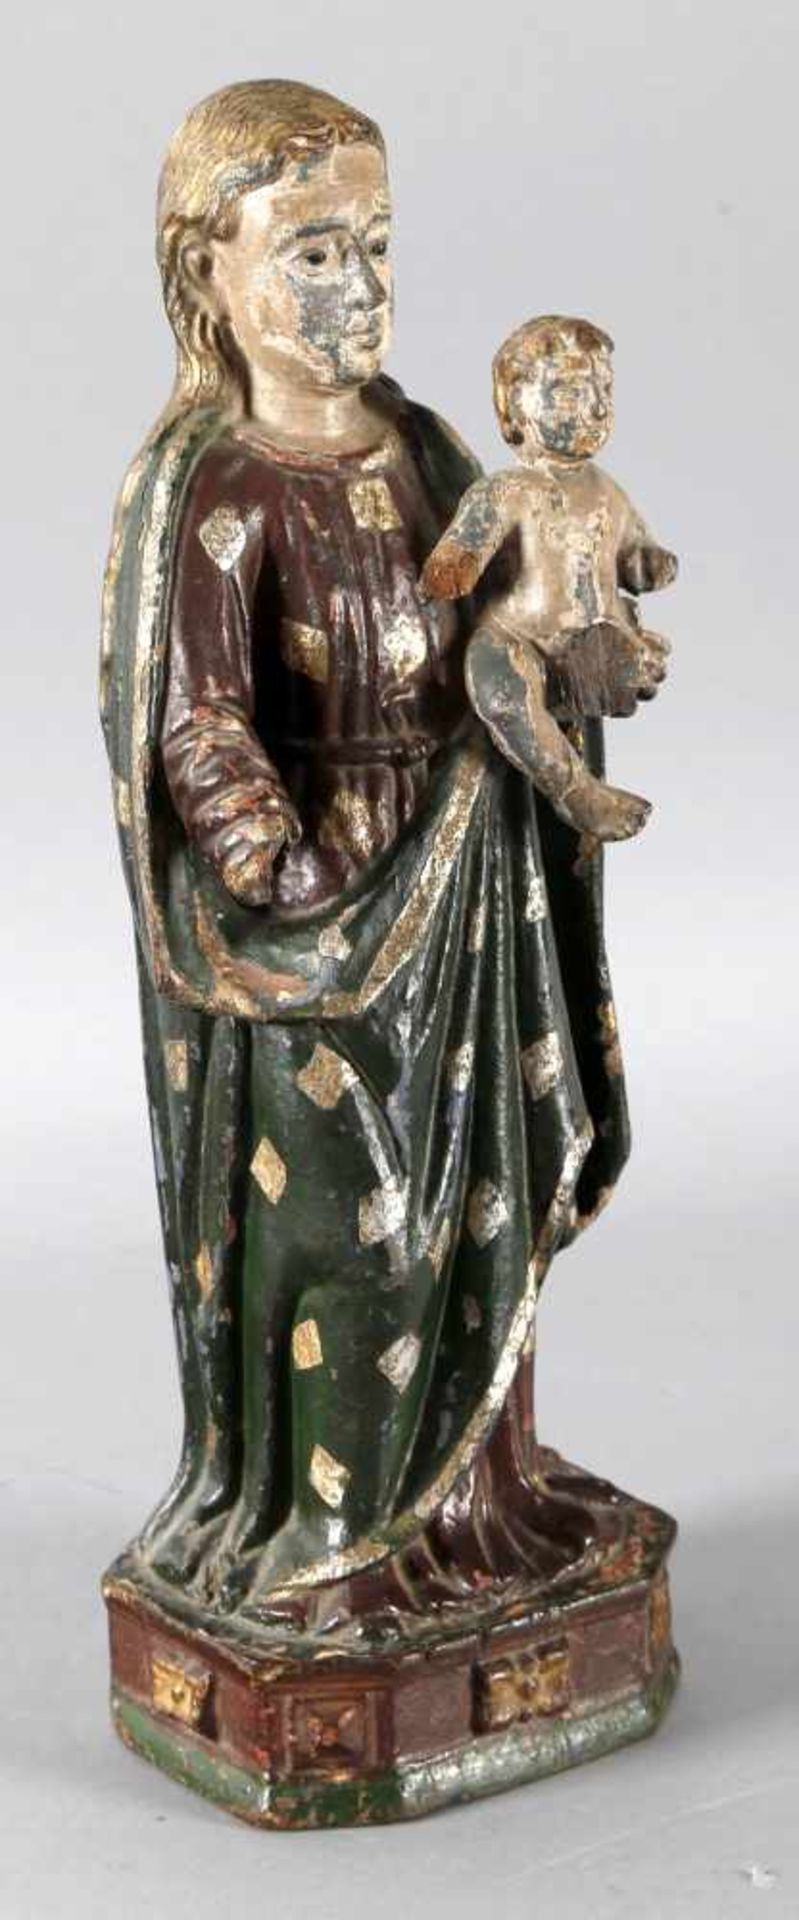 Maria mit Kind, Goa, 19. Jh.Holz geschnitzt, gefasst und vergoldet/versilbert, Skulptur ist mehrfach - Bild 2 aus 2